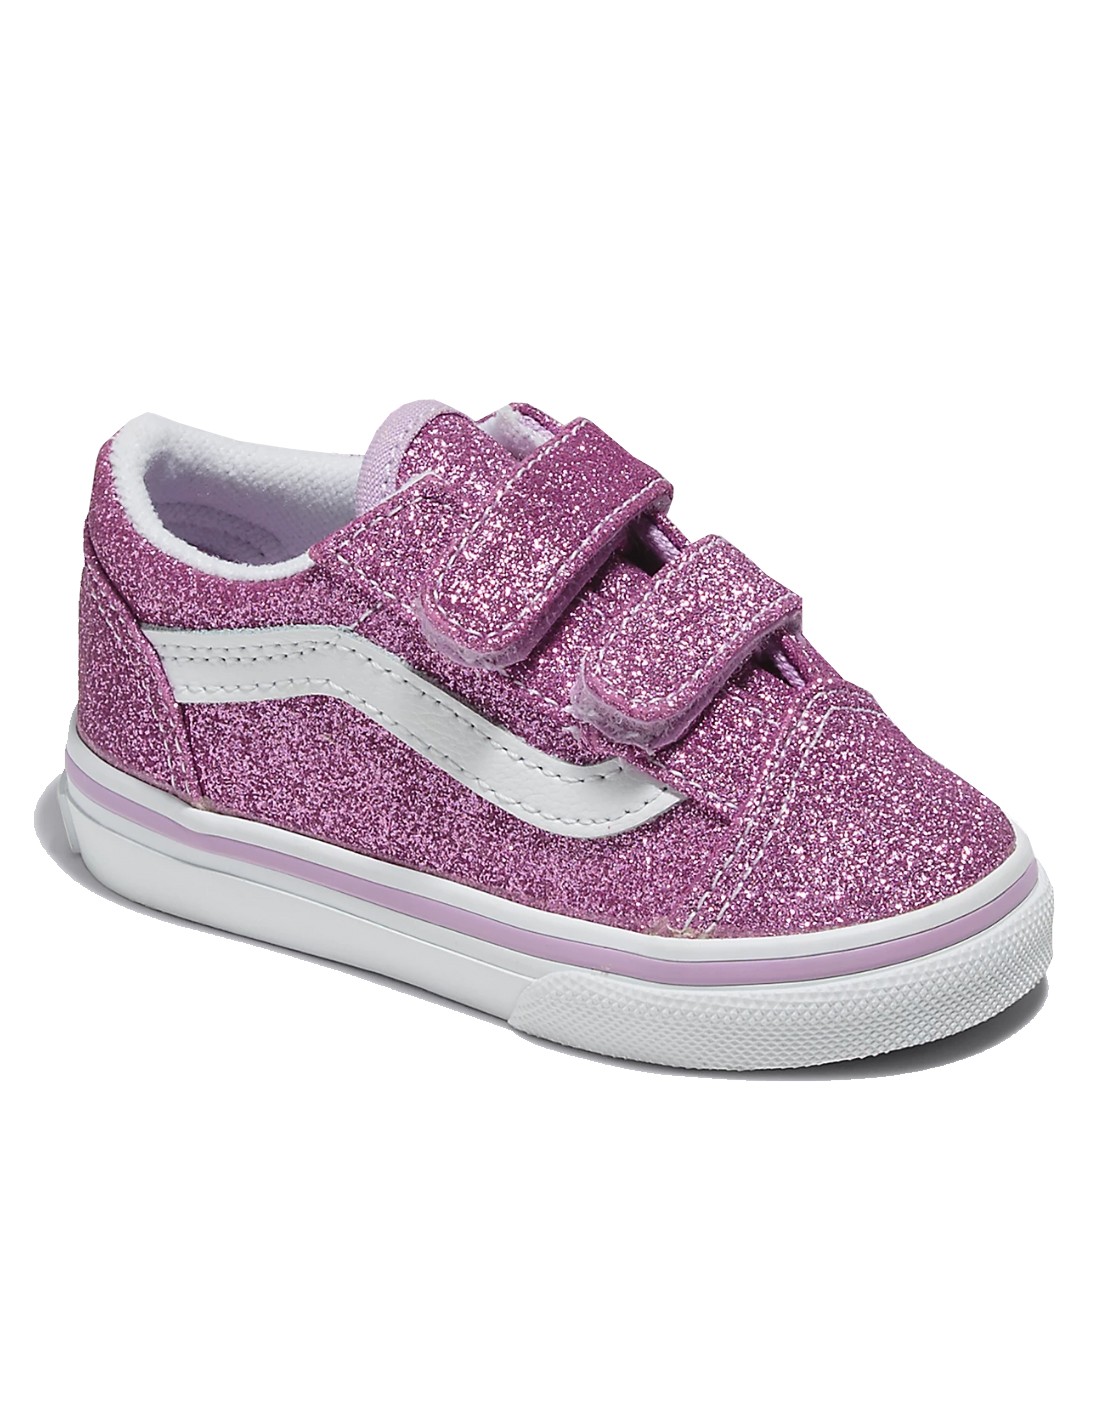 VANS Old Skool V - Glitter Lilac - Chaussures bébé